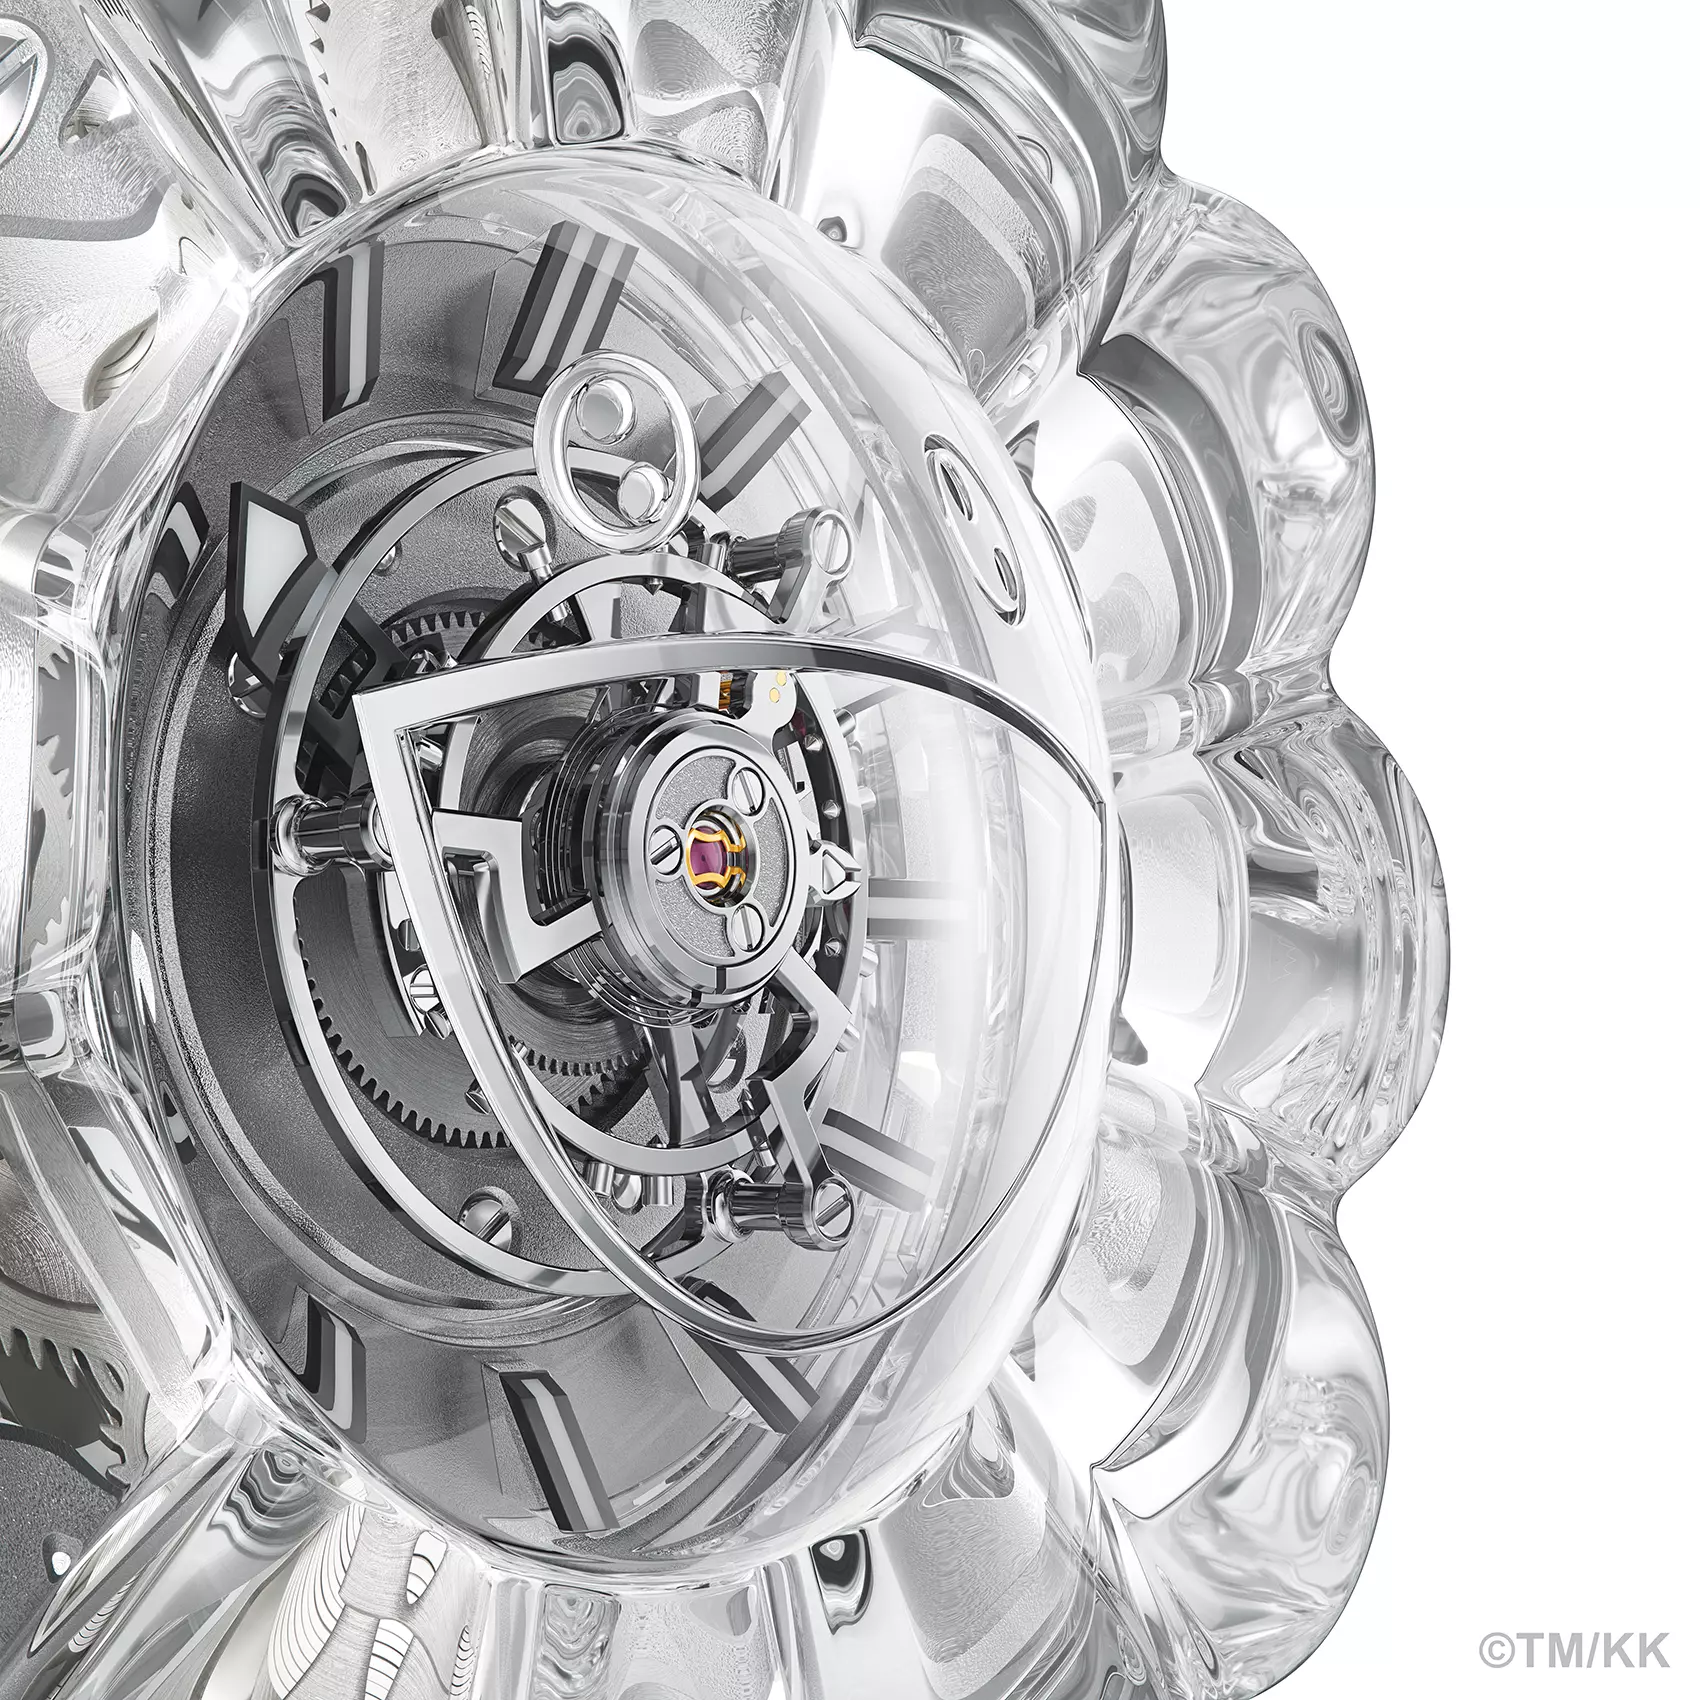 Takashi Murakami et Hublot collaborent à la création d'une montre tourbillon MP-15 transparente avec des pétales en saphir uniques